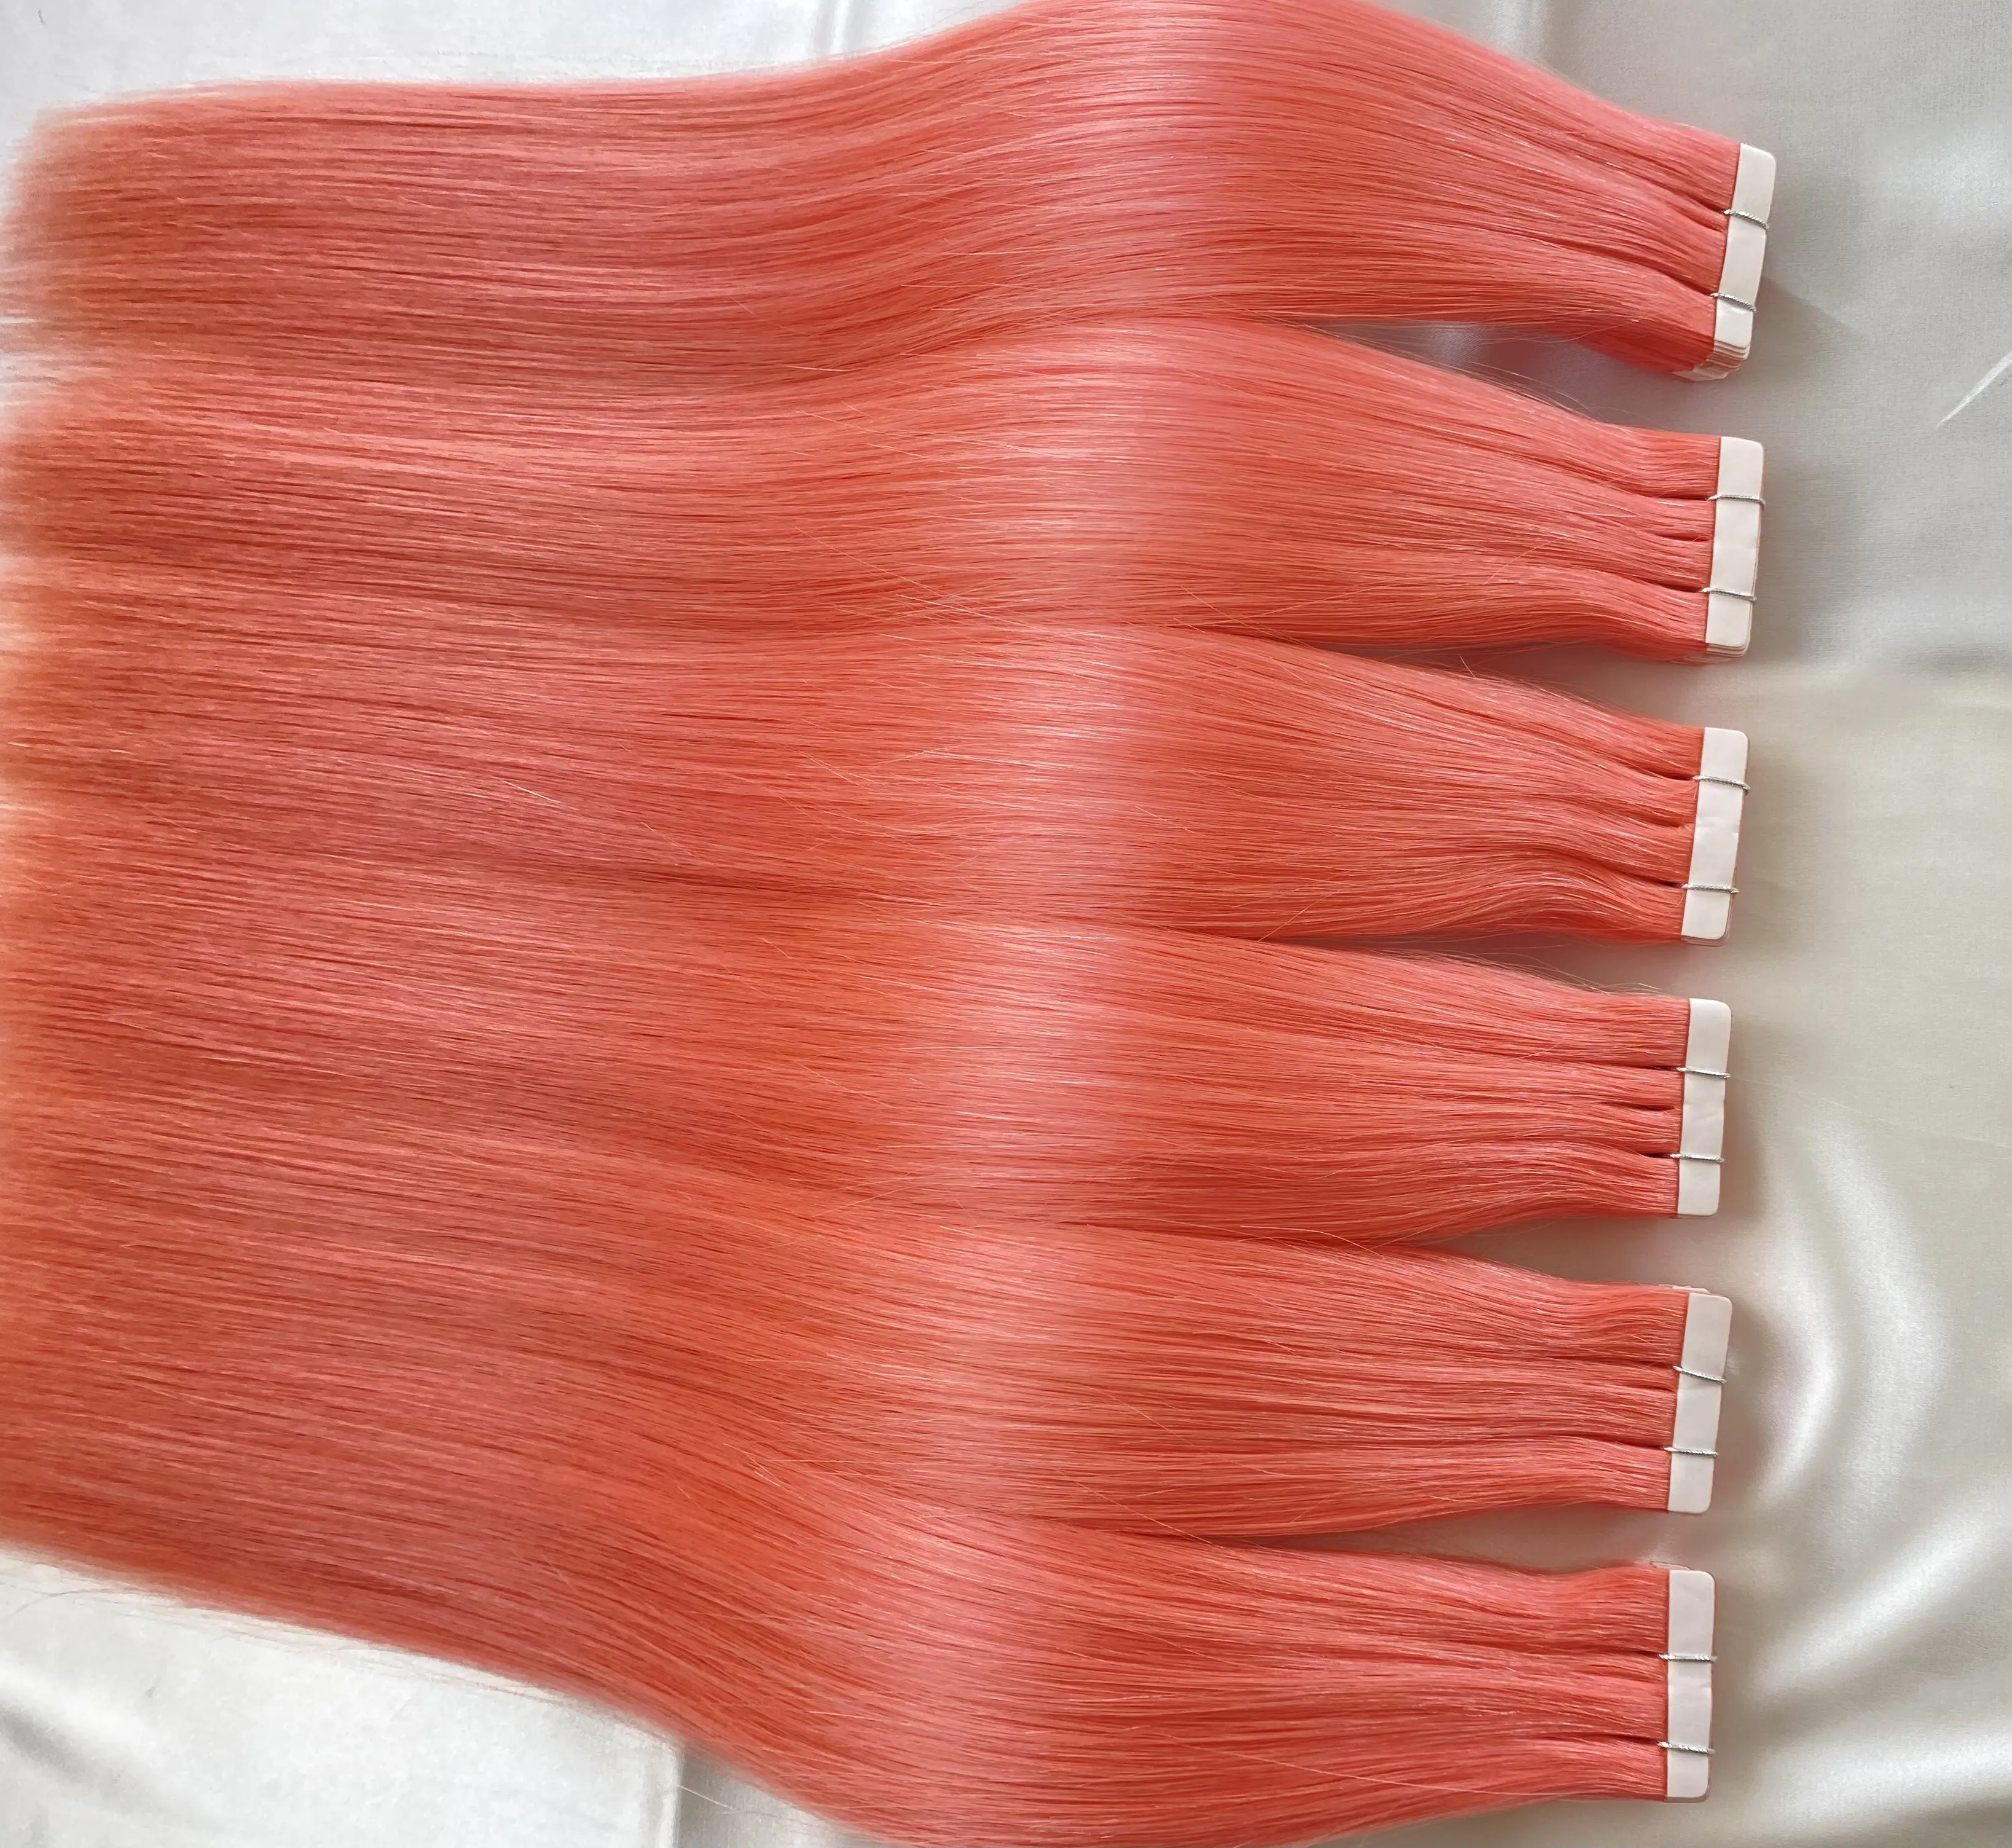 وصلات إطالة الشعر الطبيعي بشريط لاصق روسي مزدوج 12A يتميز بالمبيعات العالية والجذابة مباشرة من المصنع